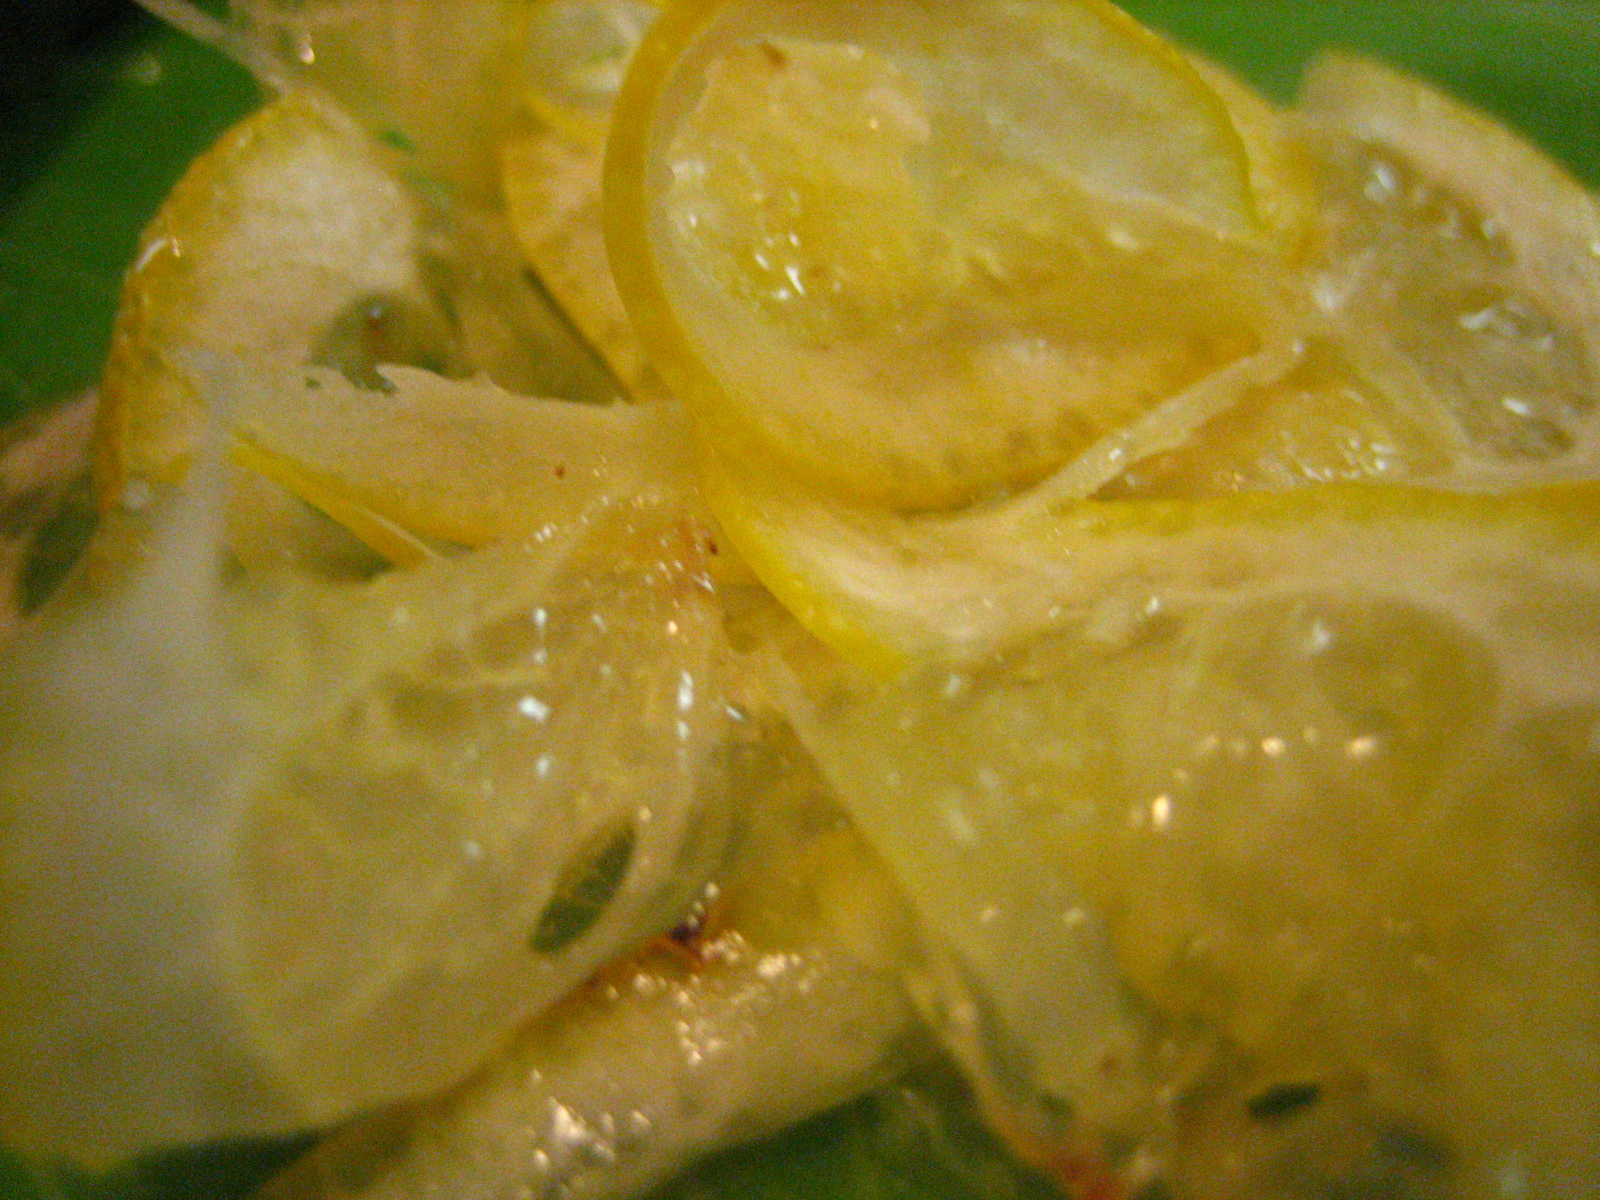 lemon shavings